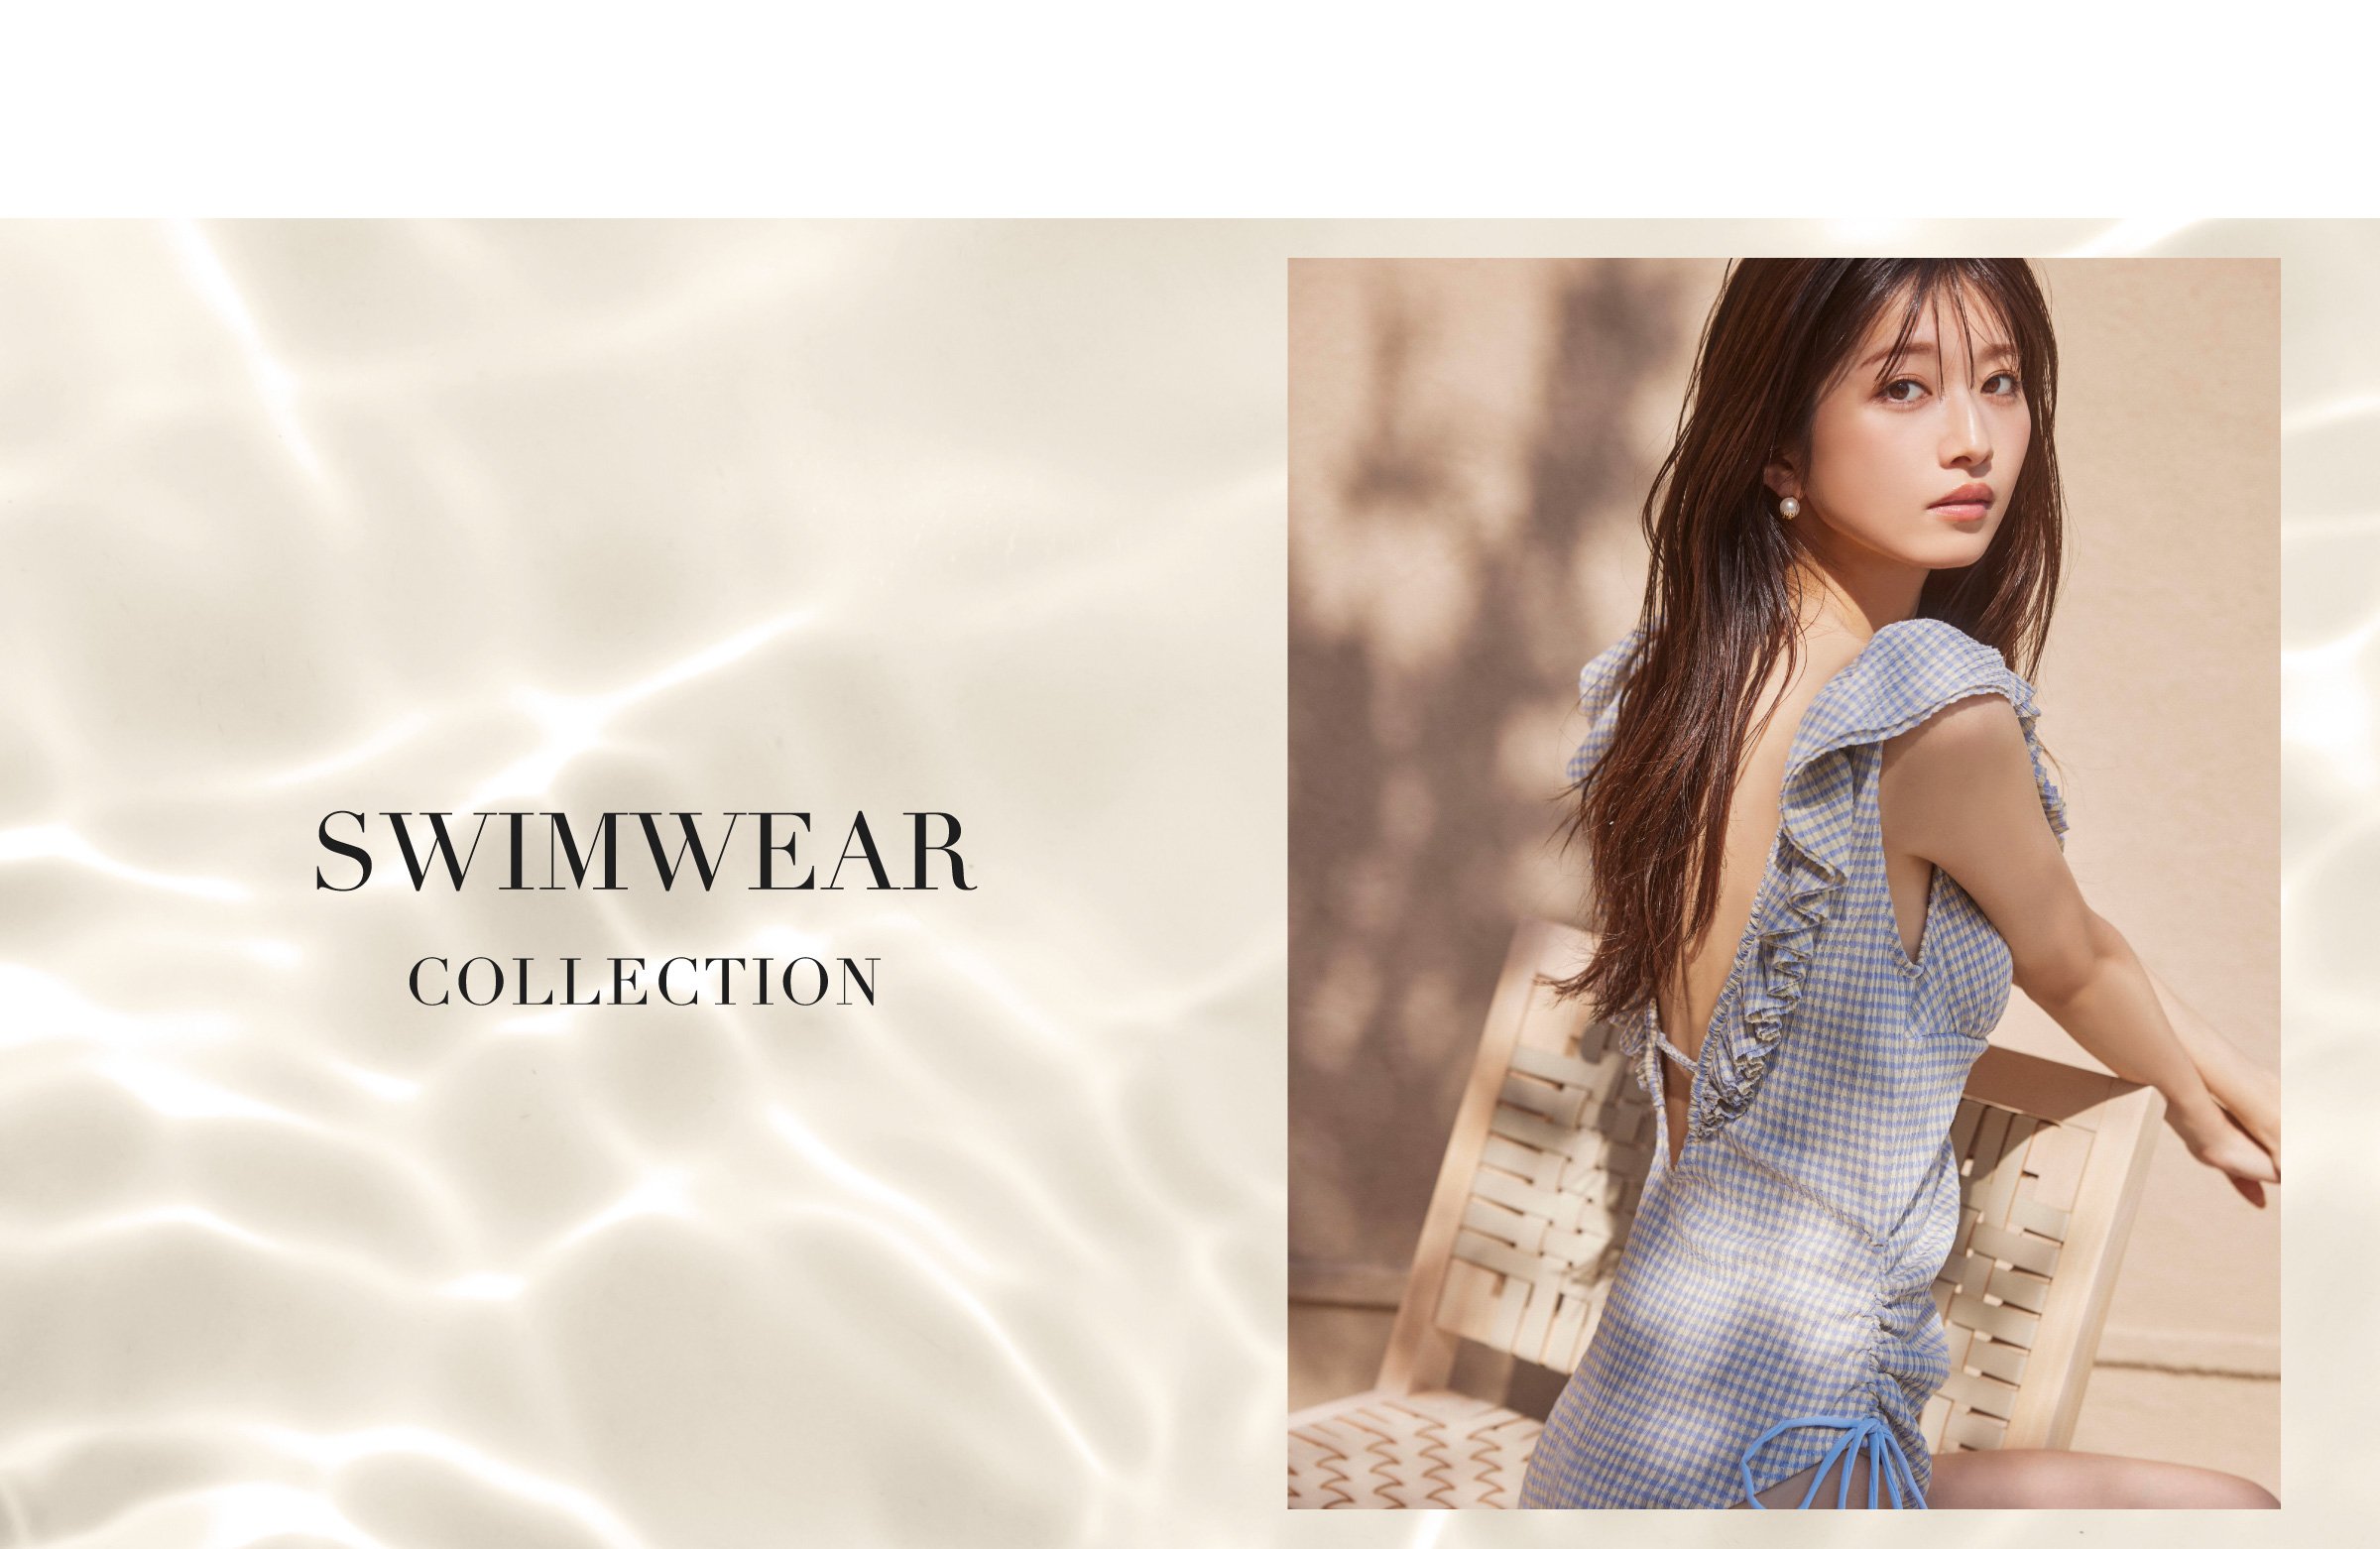 Swimwear collection 主役級のデザインに注目♡水着コレクション